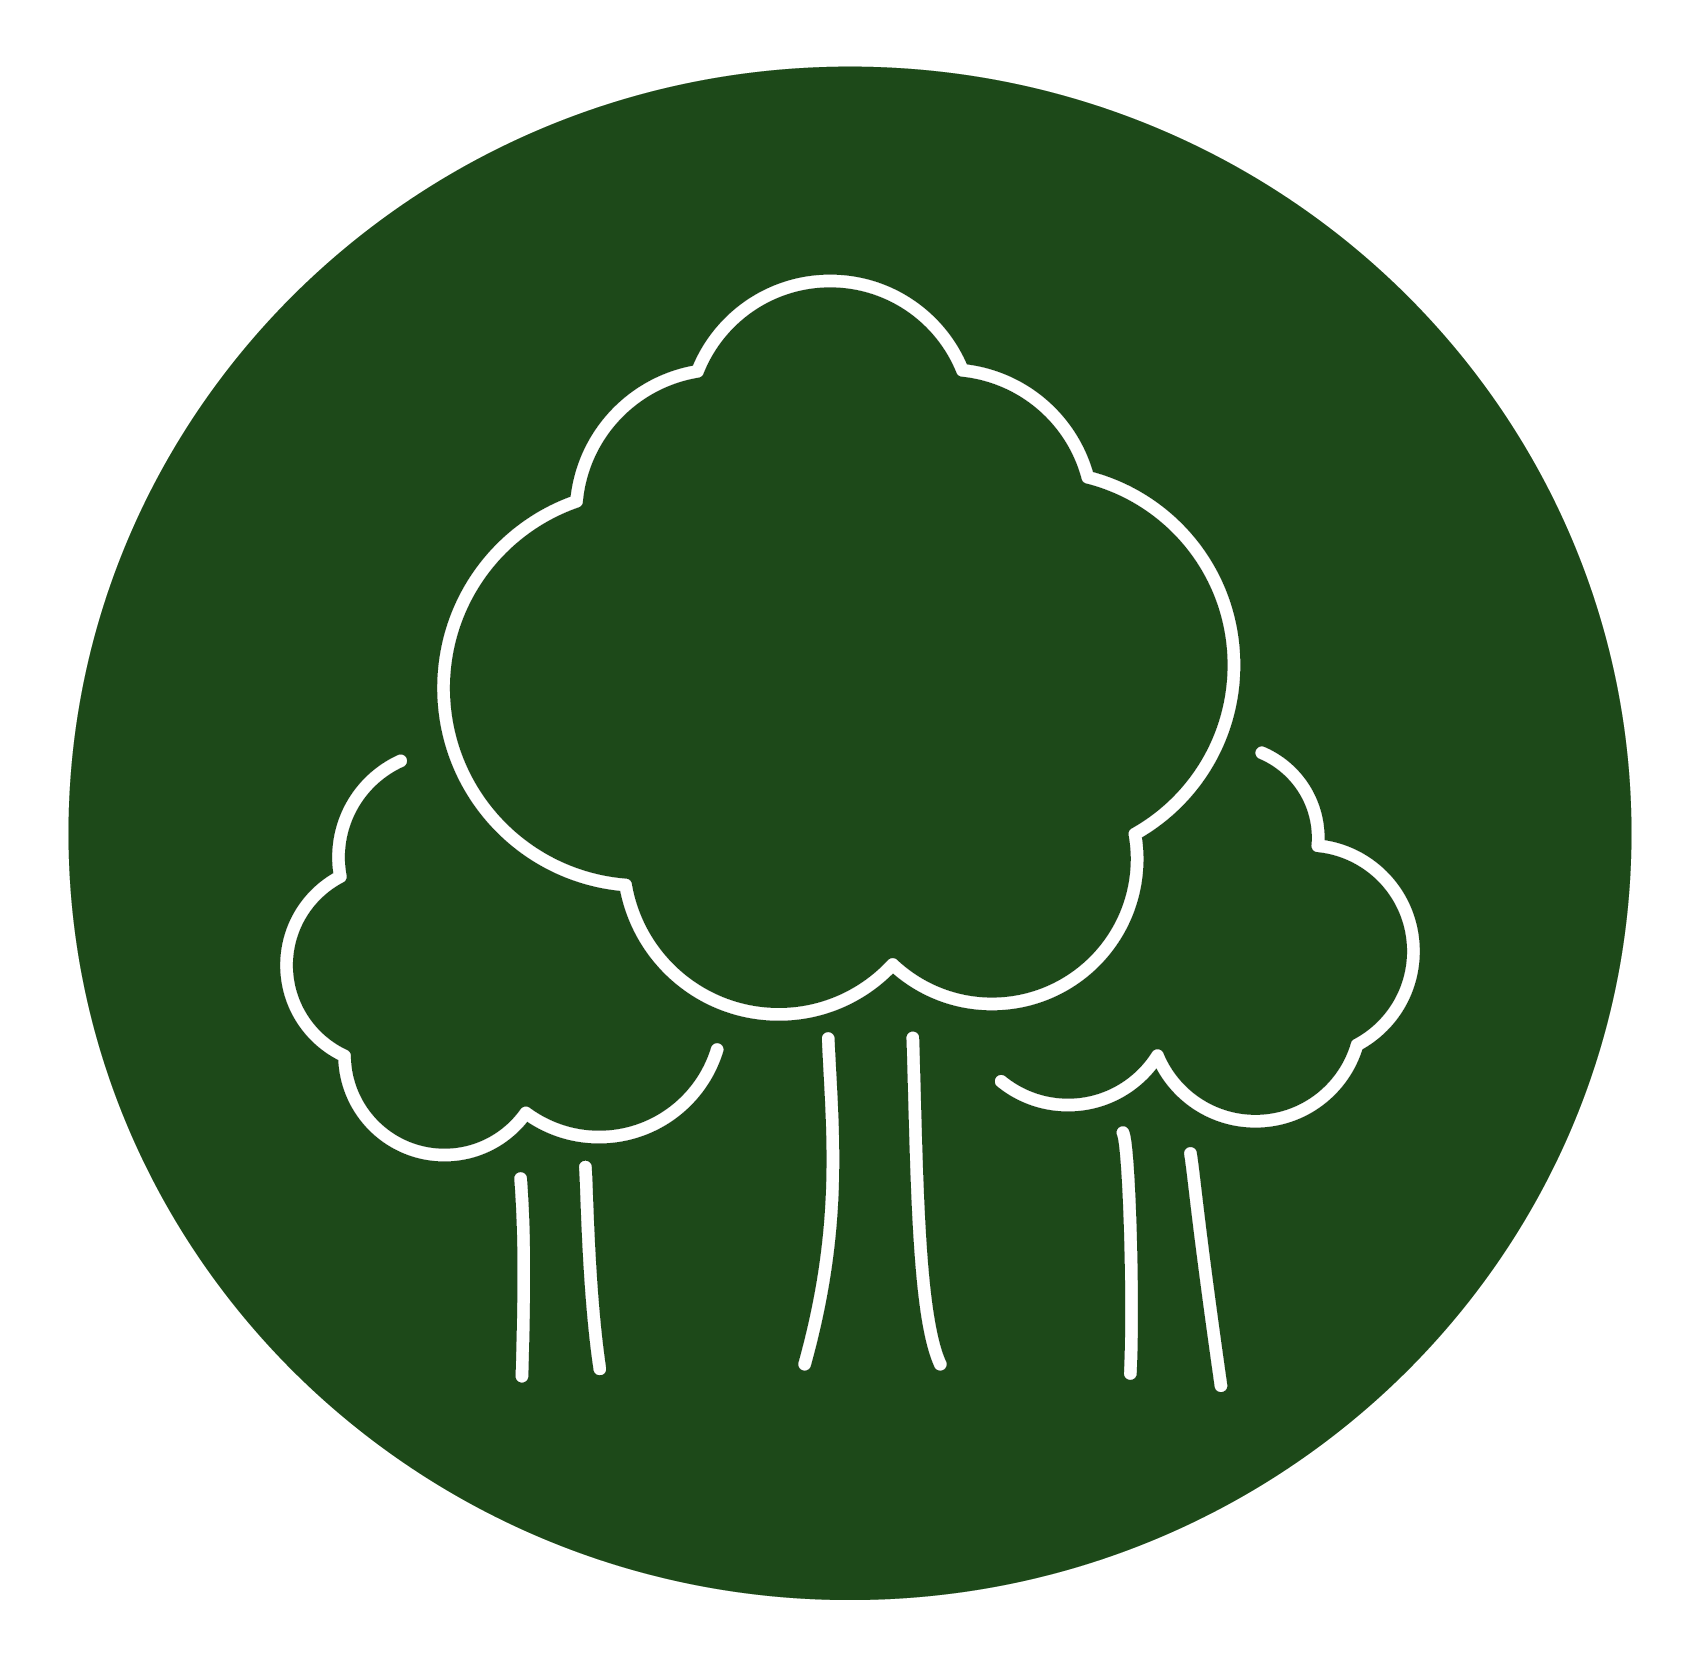 110,000 trees logo